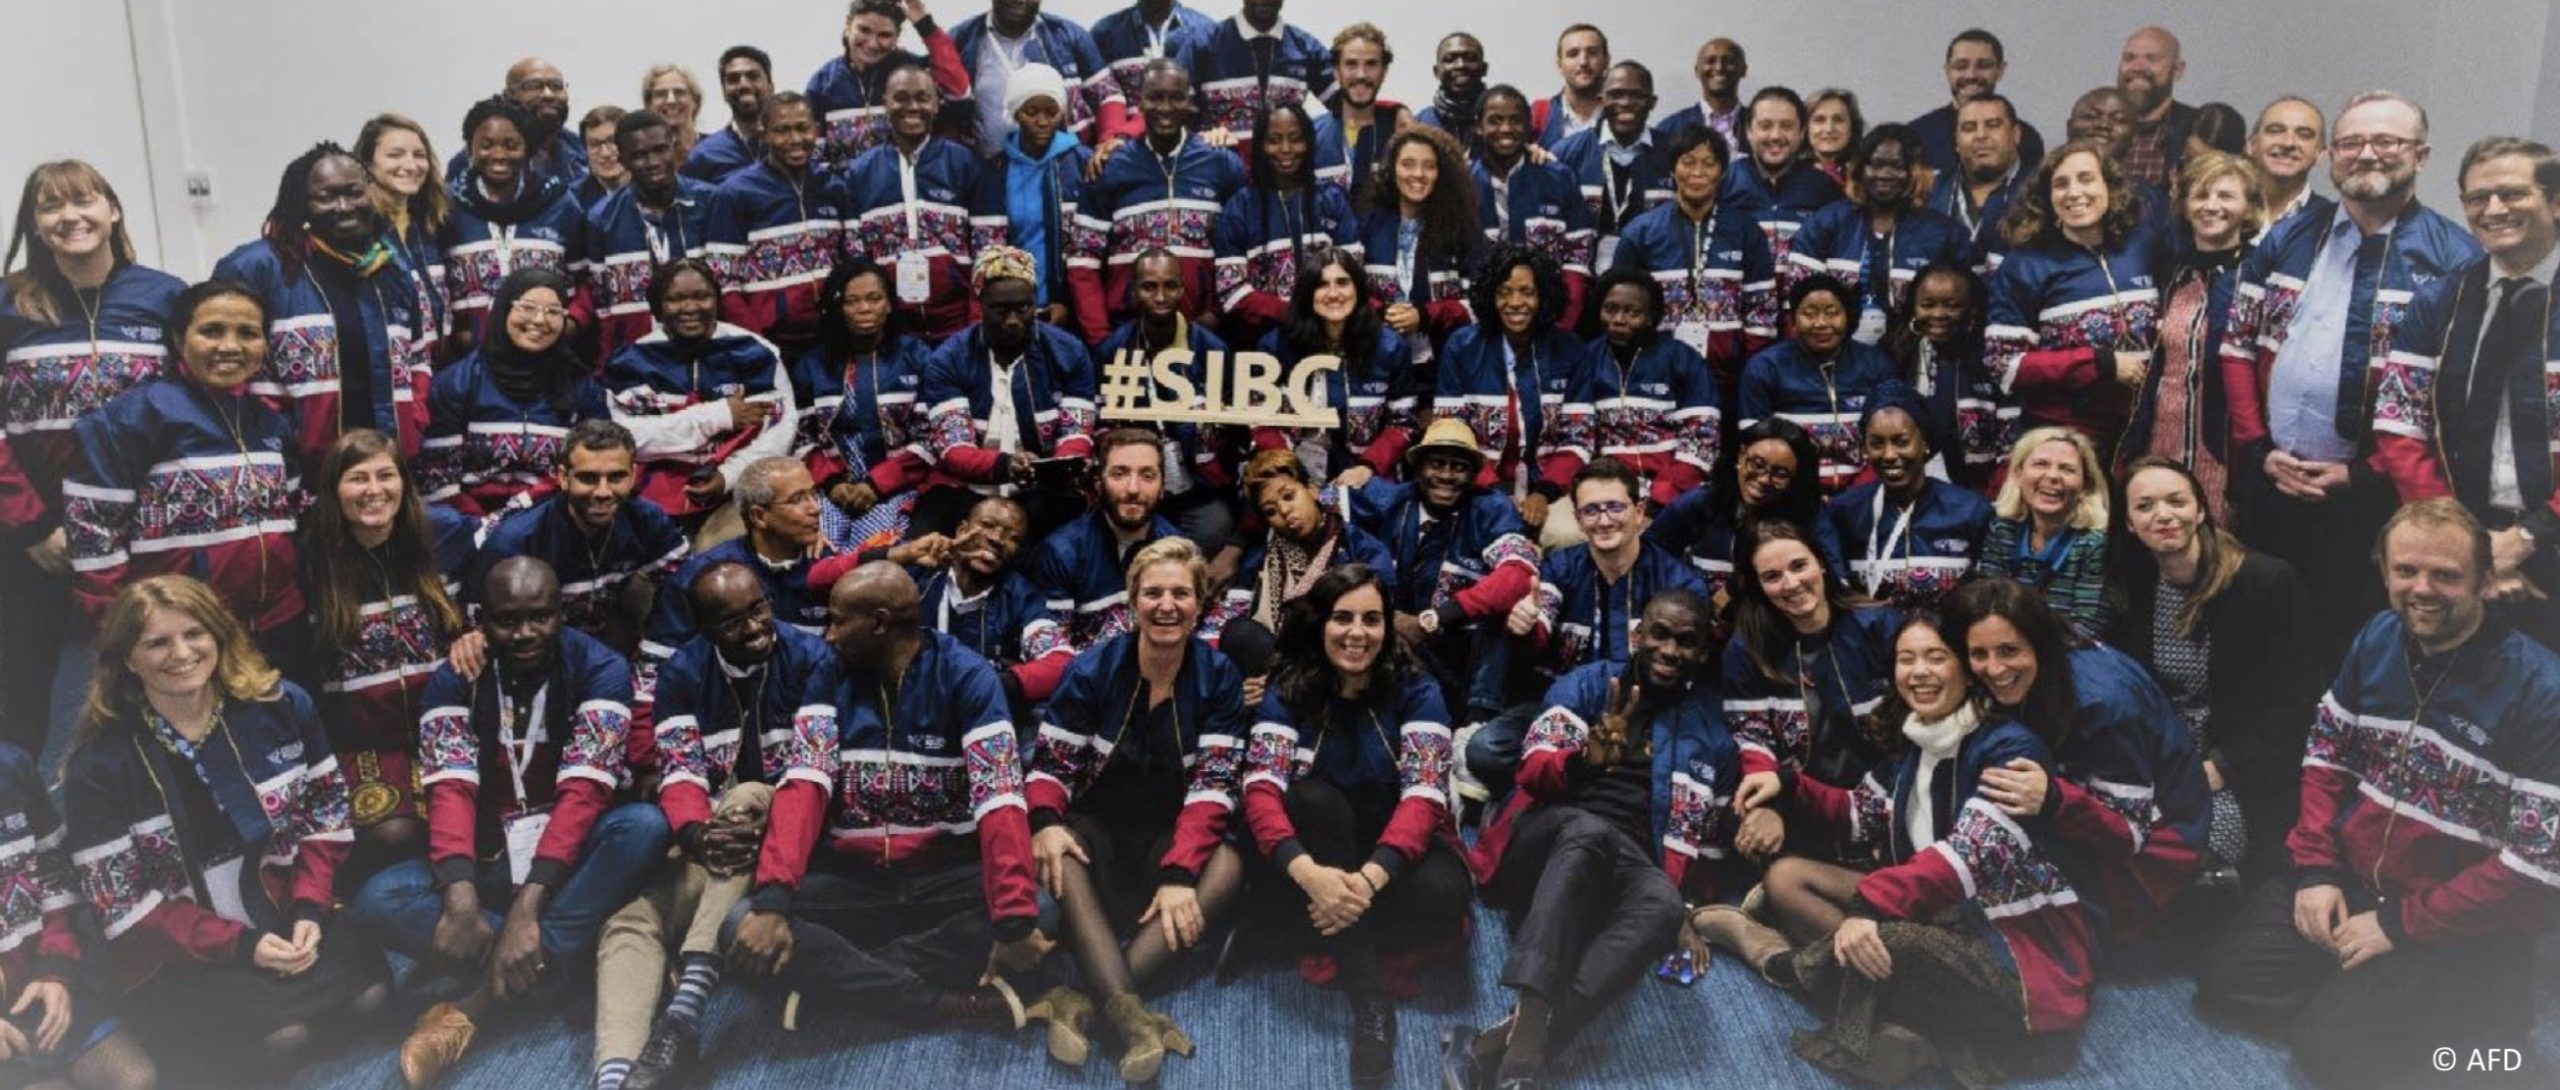 I&P et ses partenaires lancent la 4e édition du programme Social and Inclusive Business Camp (SIBC)